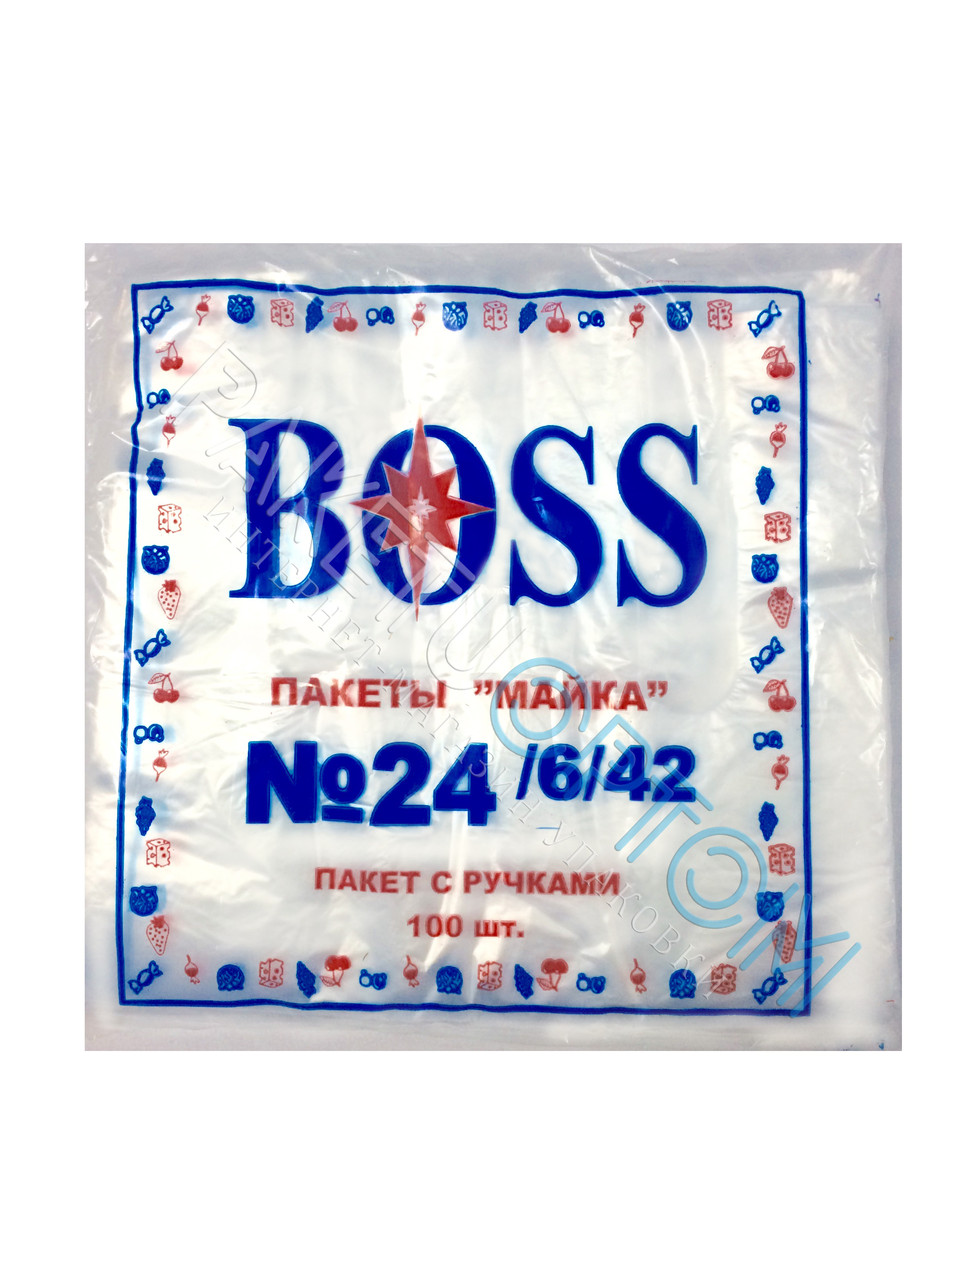 Поліетиленові пакети майка "BOSS" №24